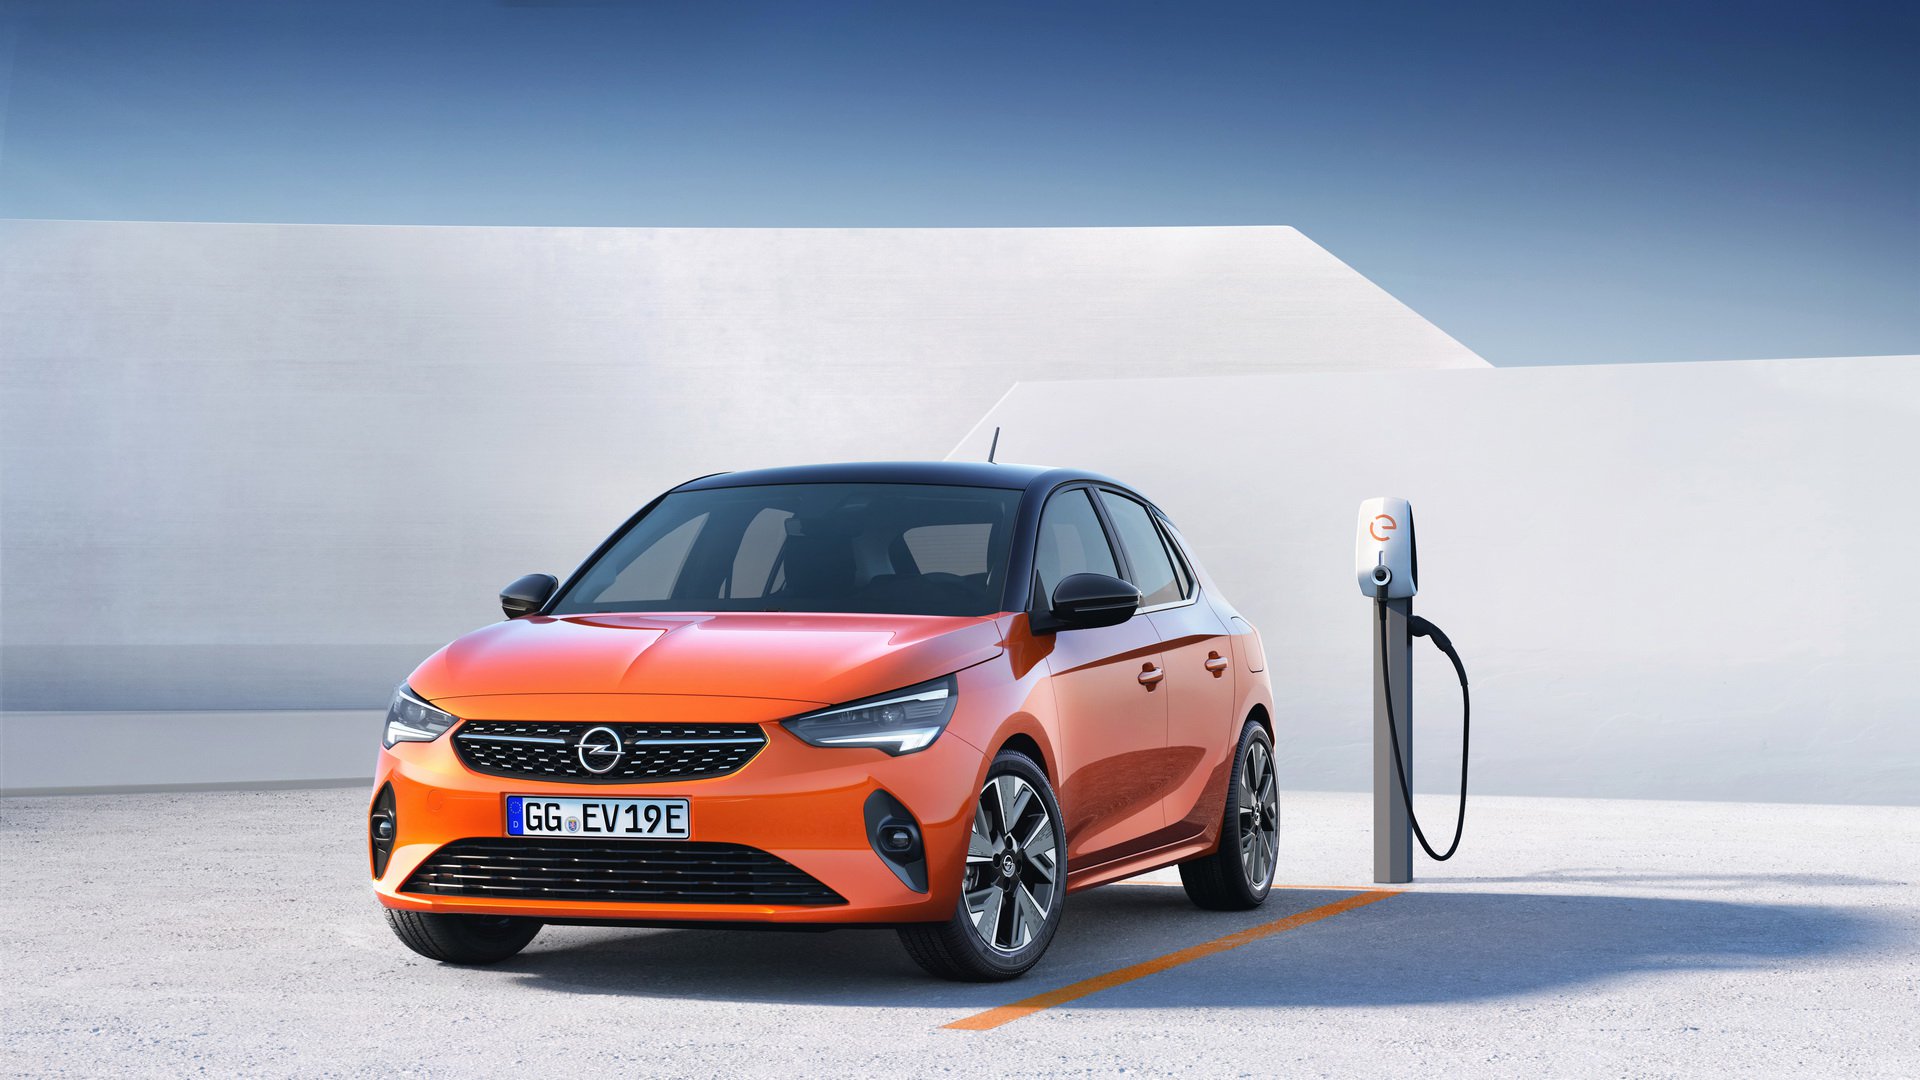 Yeni nesil Opel Corsa'nın elektrikli versiyonu tanıtıldı: Karşınızda Corsa-e